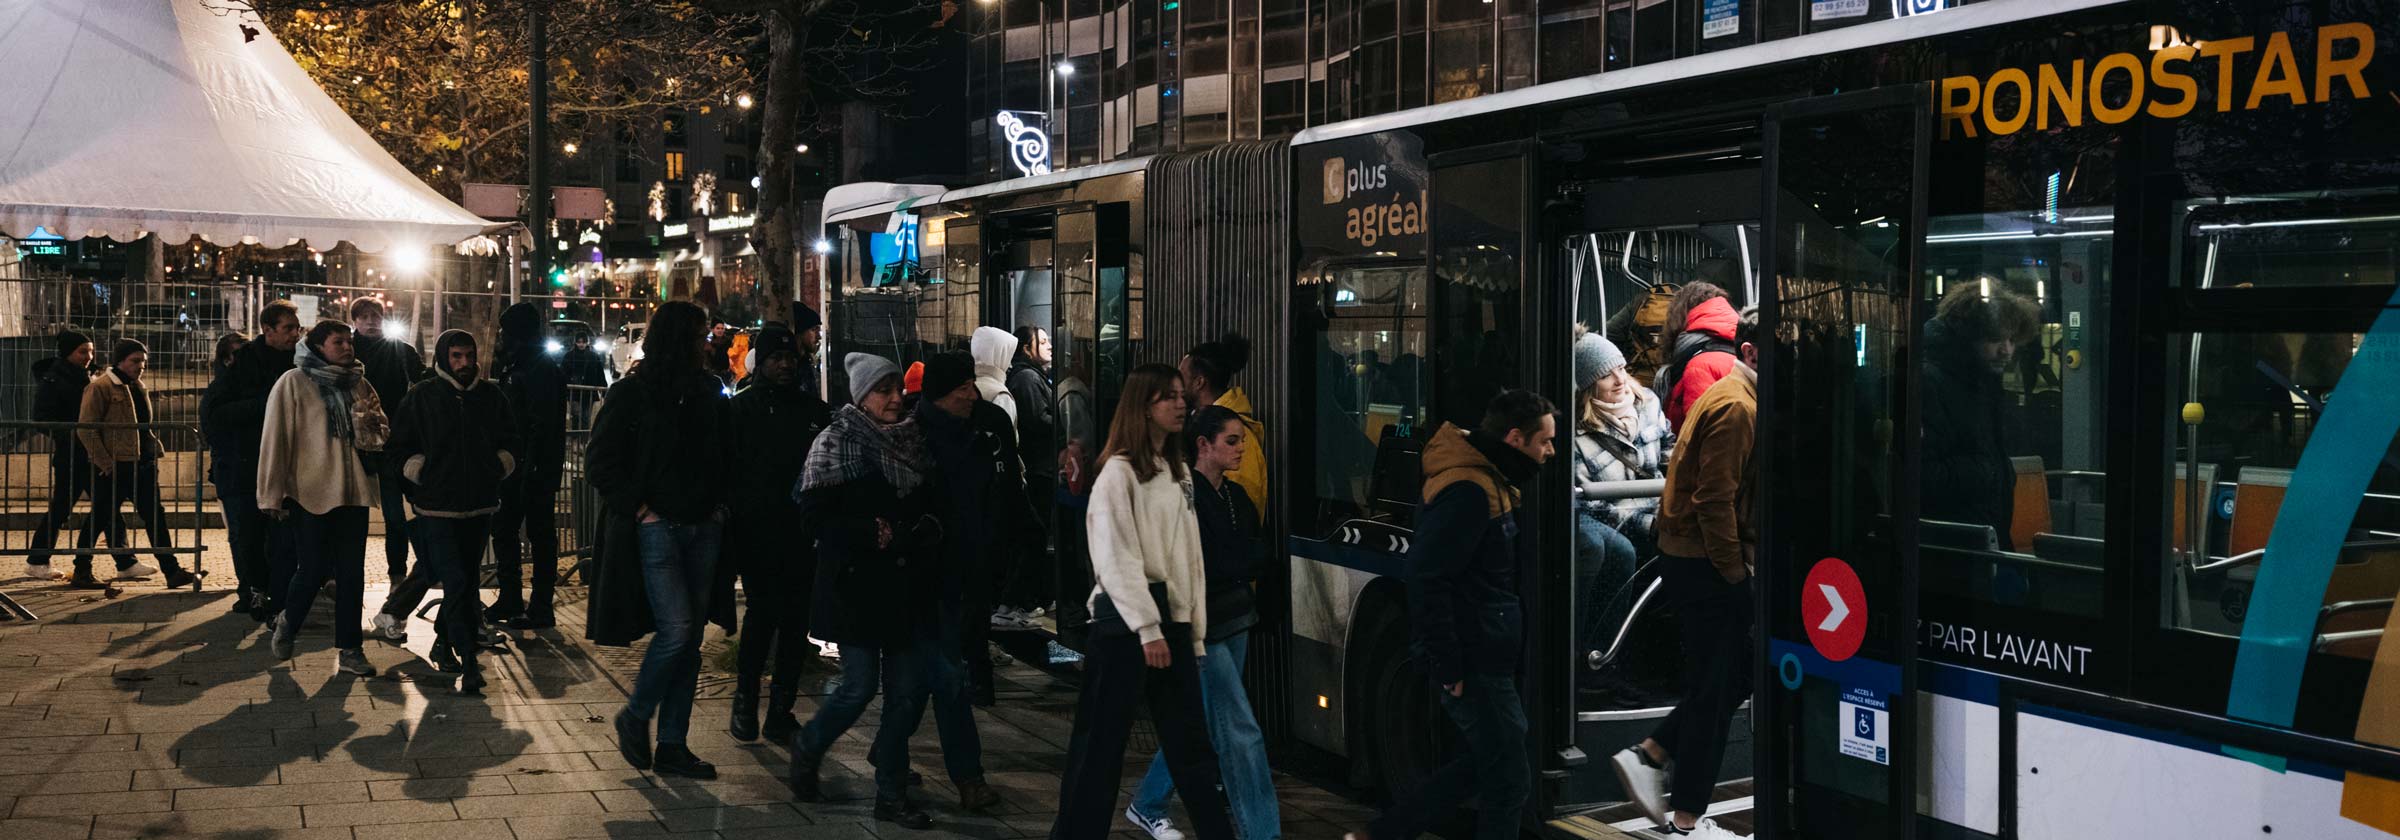 Photo de nuit avec plusieurs personnes qui montent dans un bus